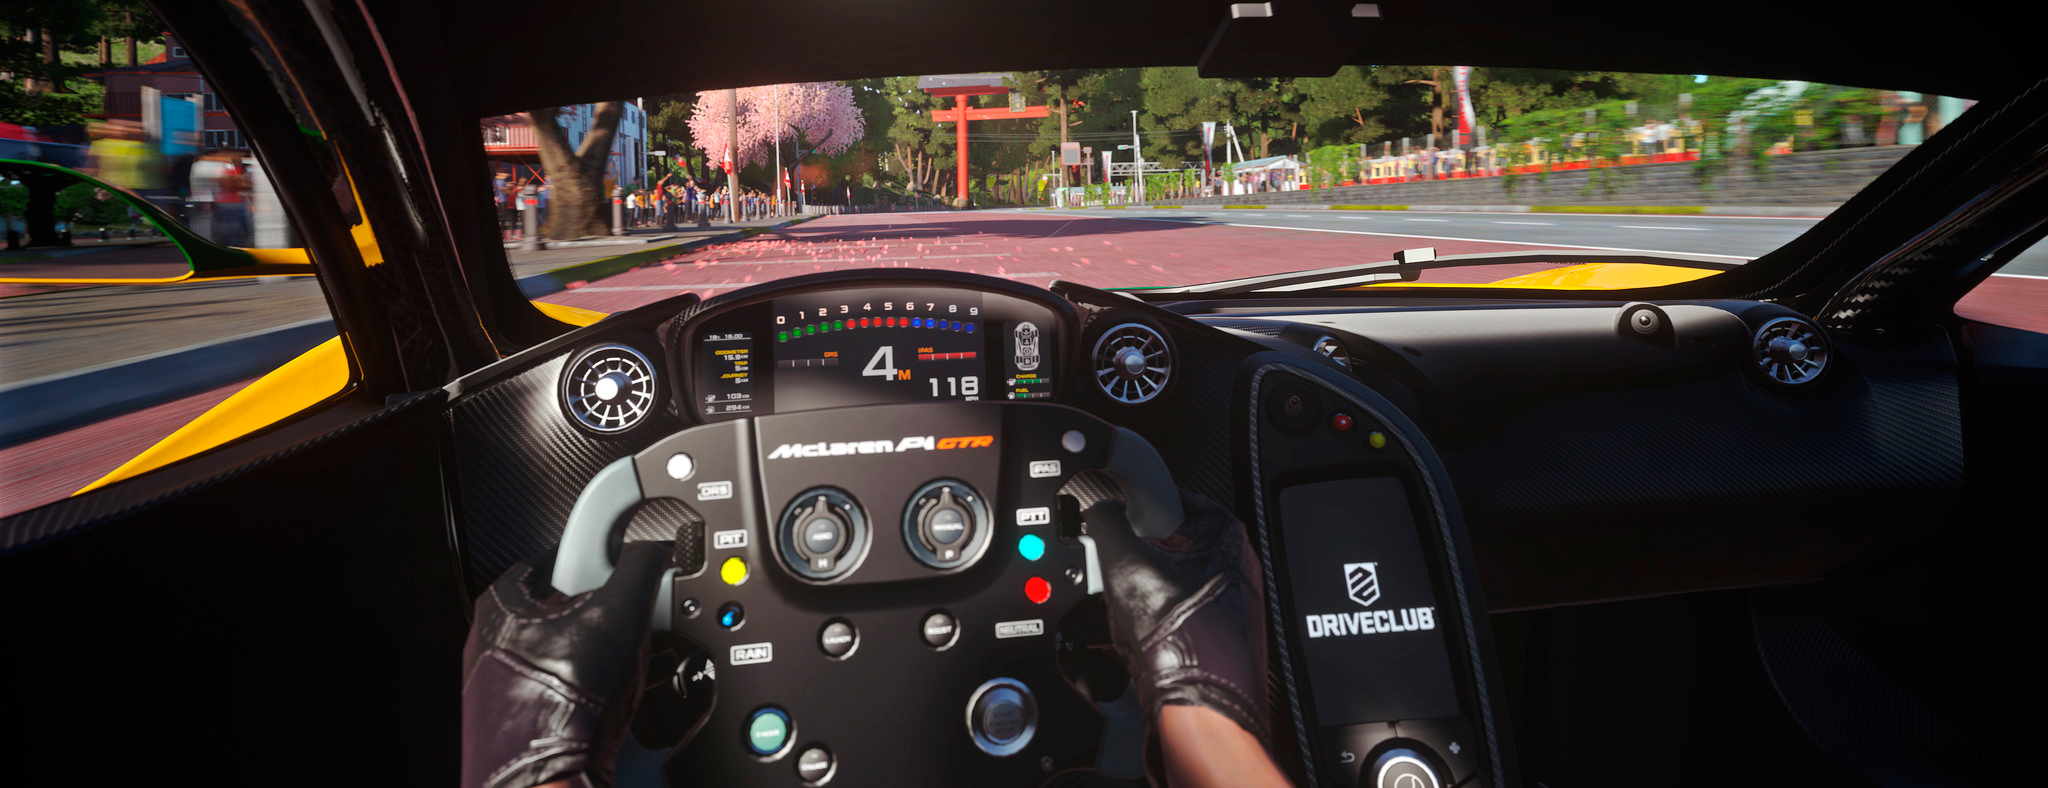 Imagen del videojuego Driver Club, de Playstation